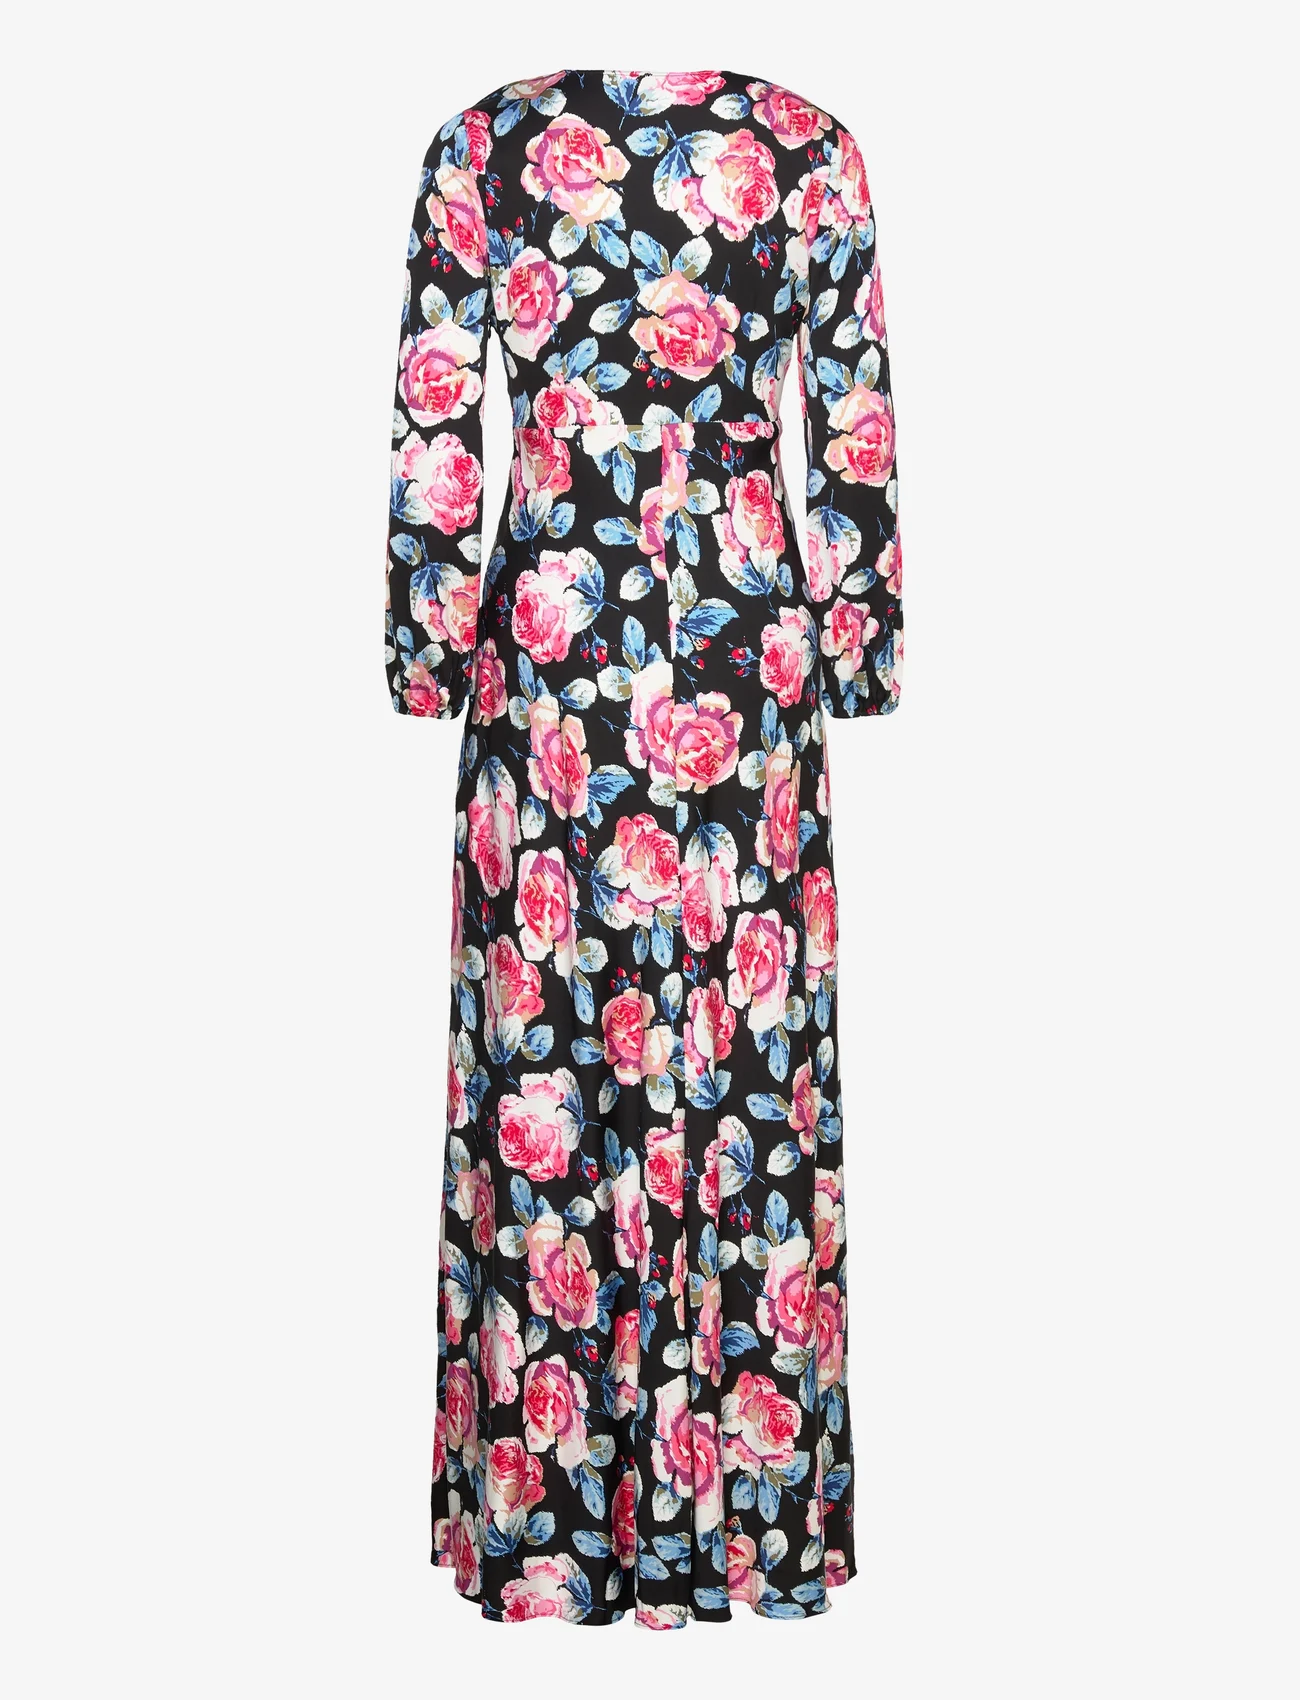 Diane von Furstenberg - DVF MONIKA DRESS - maxi sukienki - fortune rose med - 1